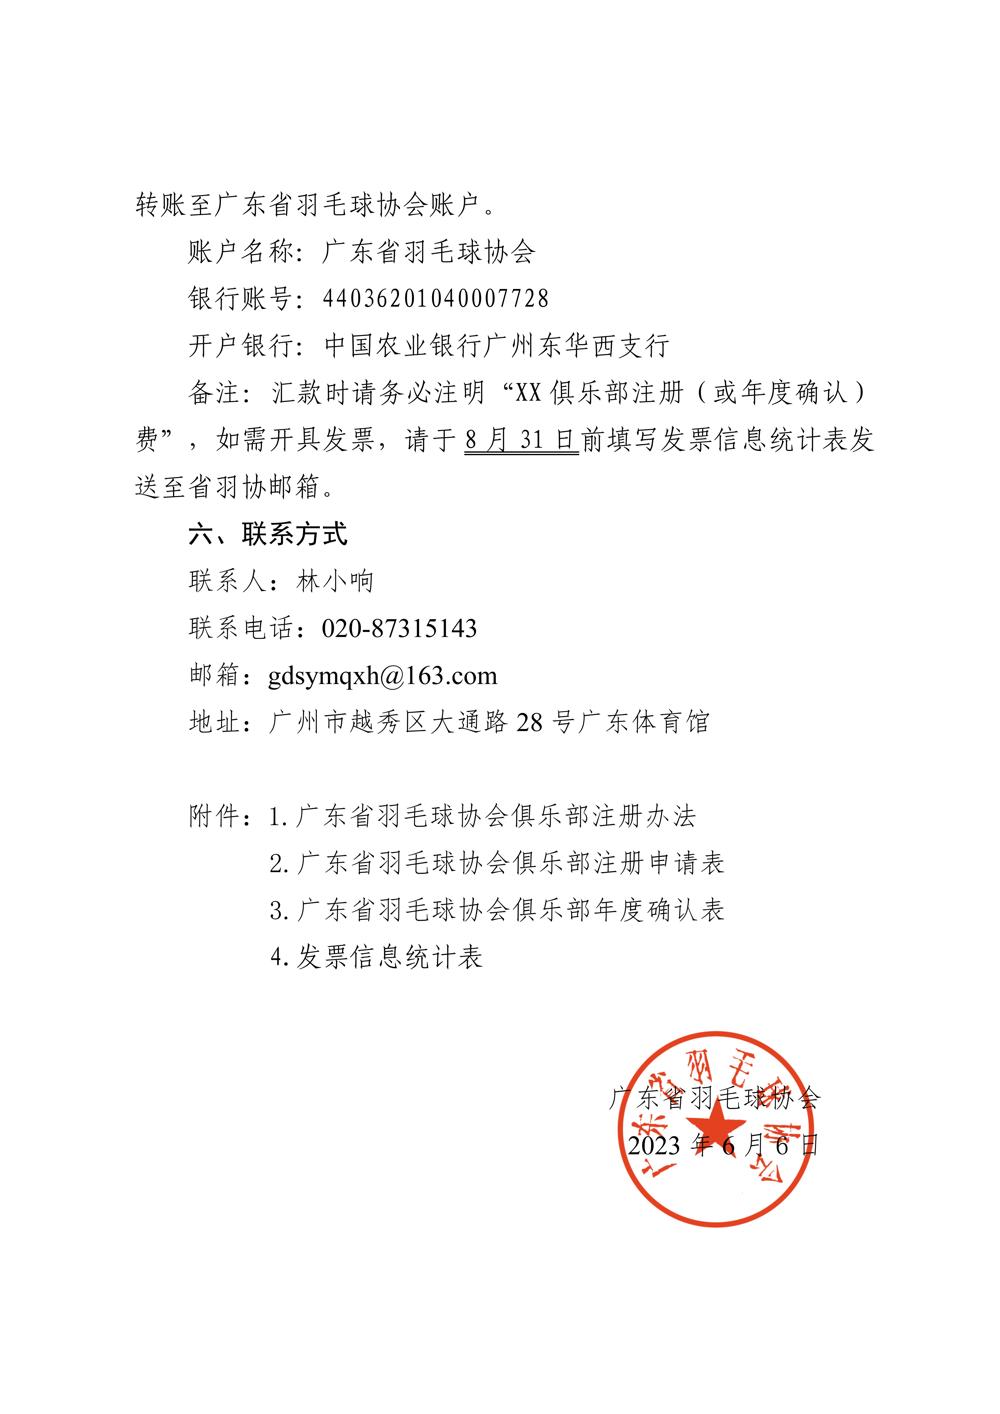 广东省羽毛球协会关于开展2022年度俱乐部注册工作的通知-合并版_03